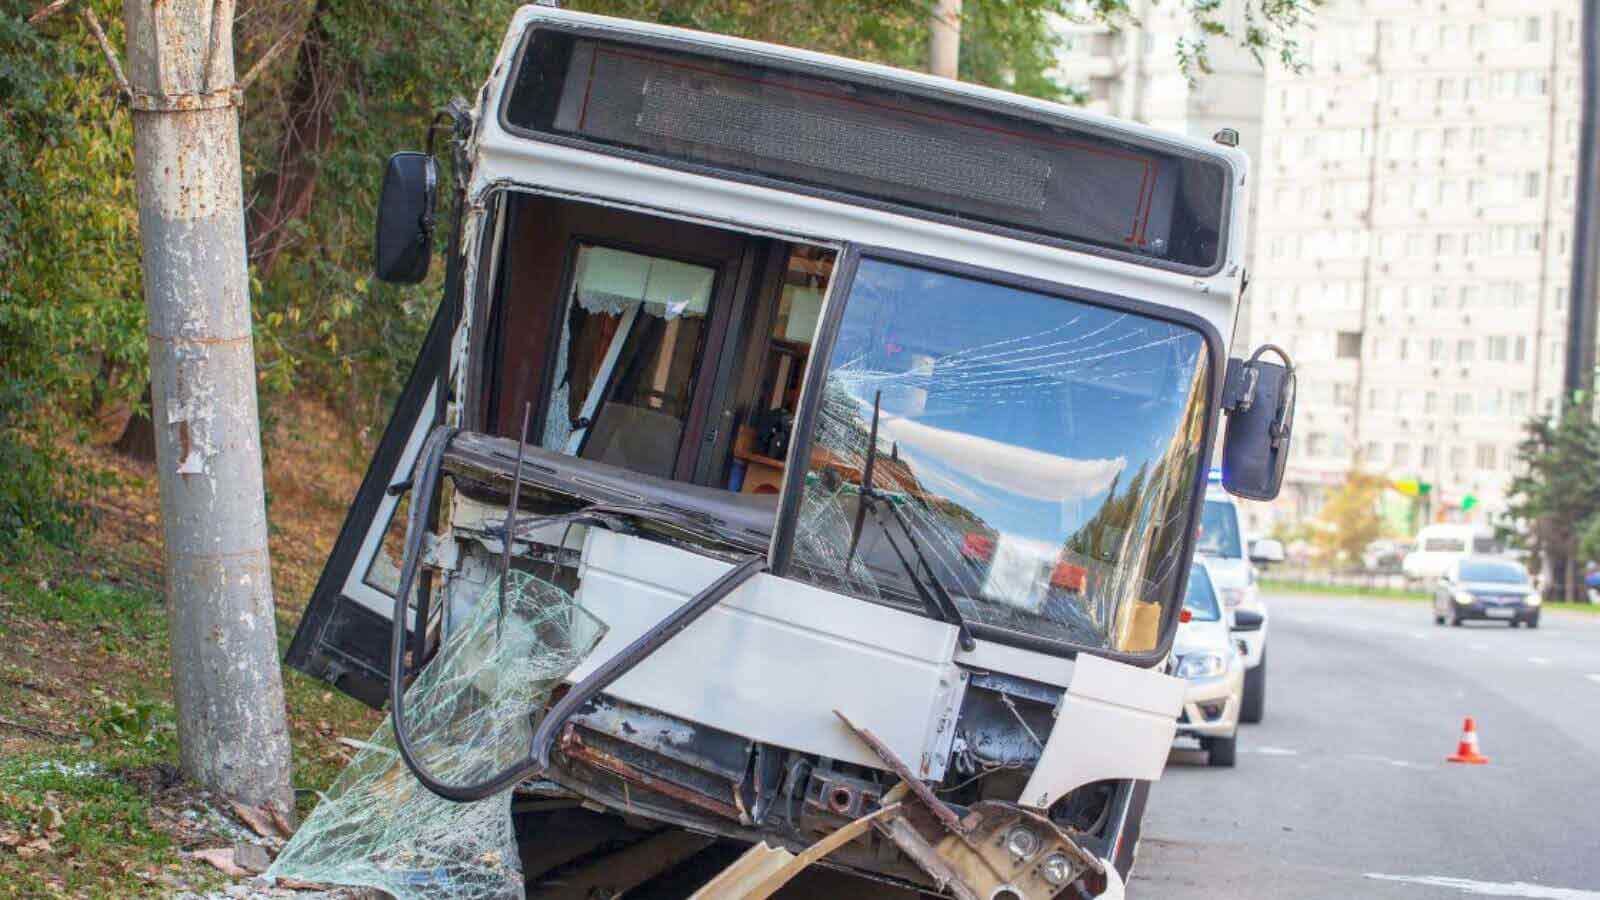 Bus accident